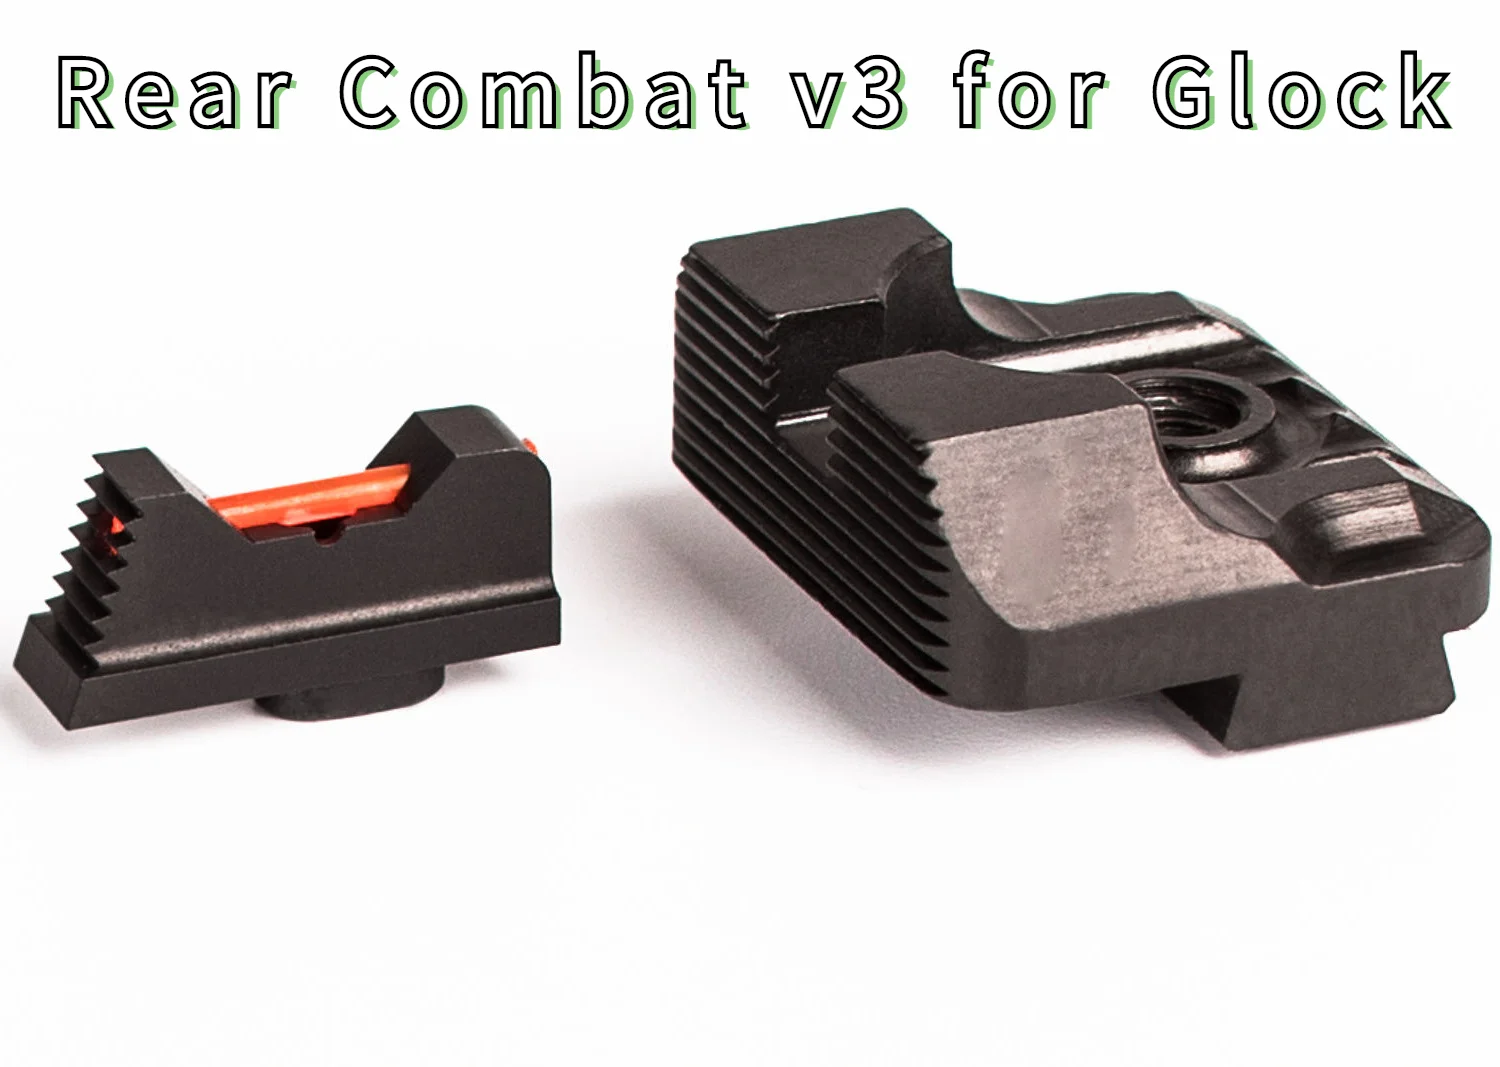 

Smartside Sight Set .230 Fiber Optic Front Sight / Rear Combat v3 for Glock standard models 17,17L,19 Tactical Accessories